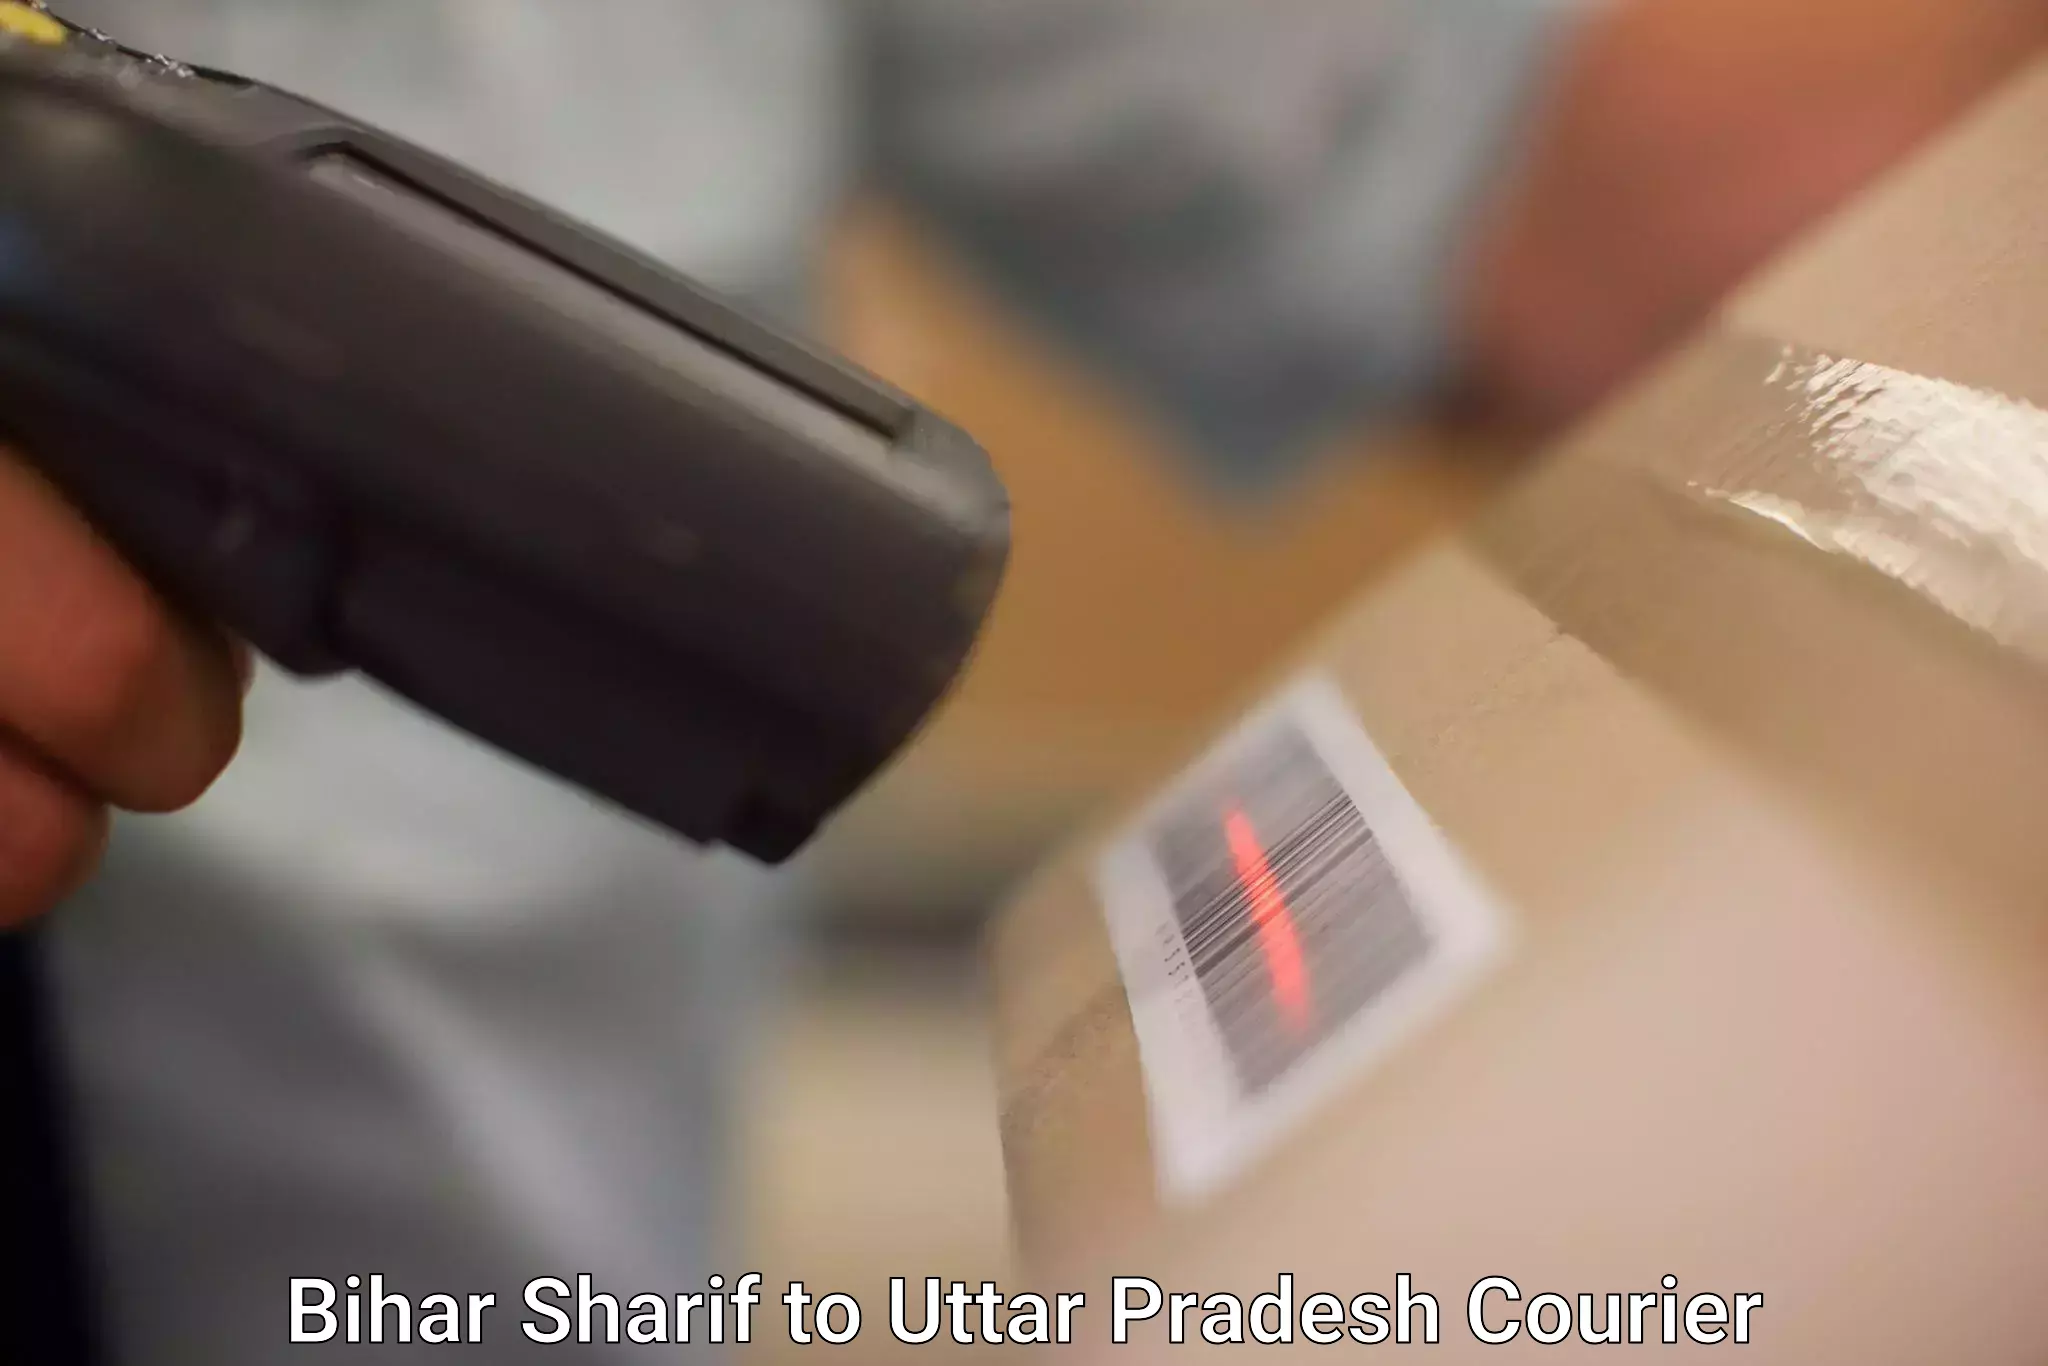 24/7 courier service Bihar Sharif to Vrindavan